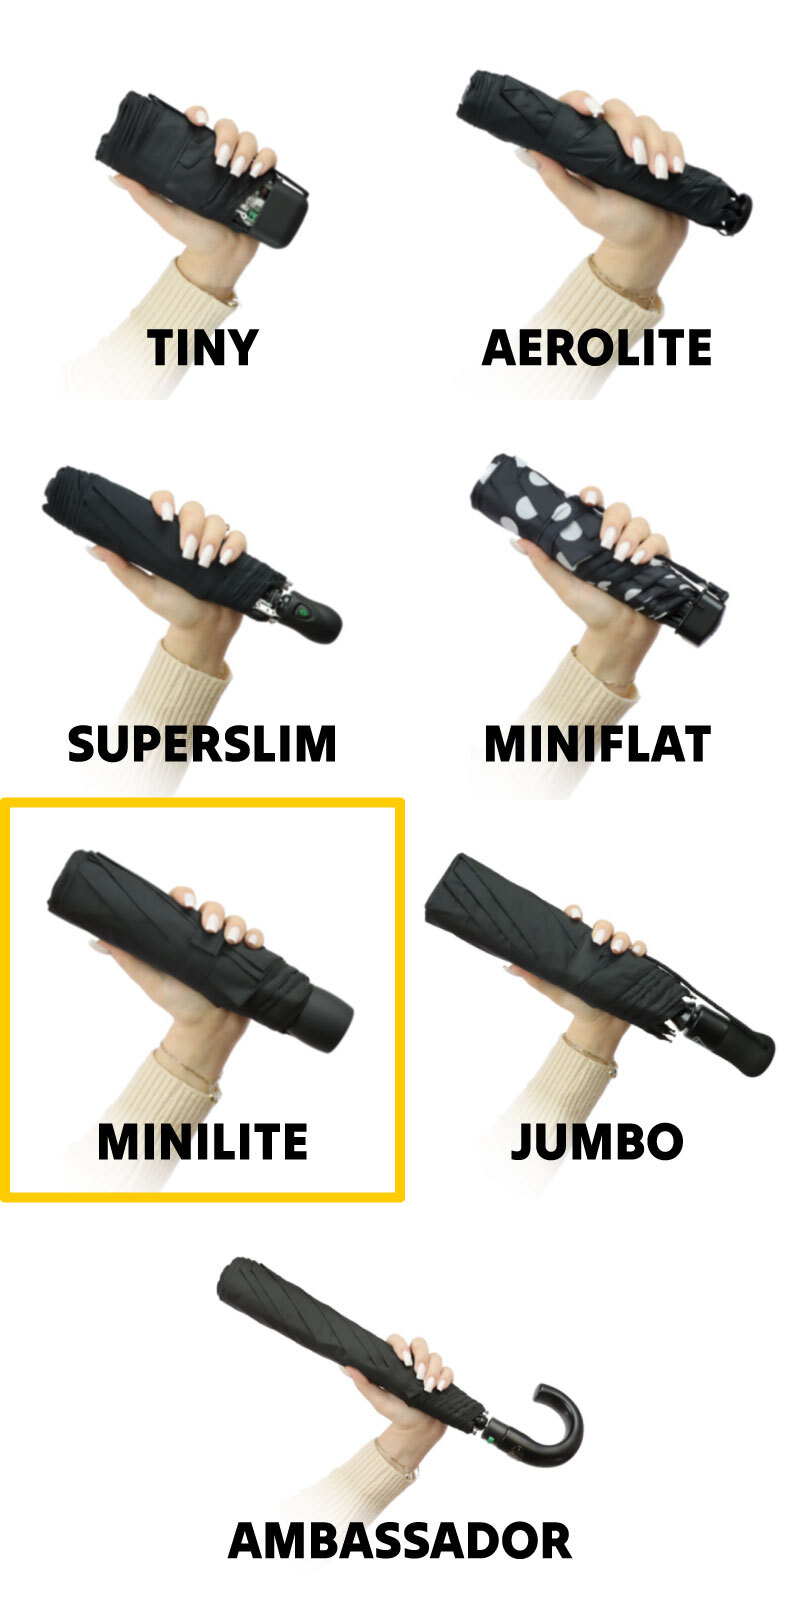 fulton compact umbrellas comparison image